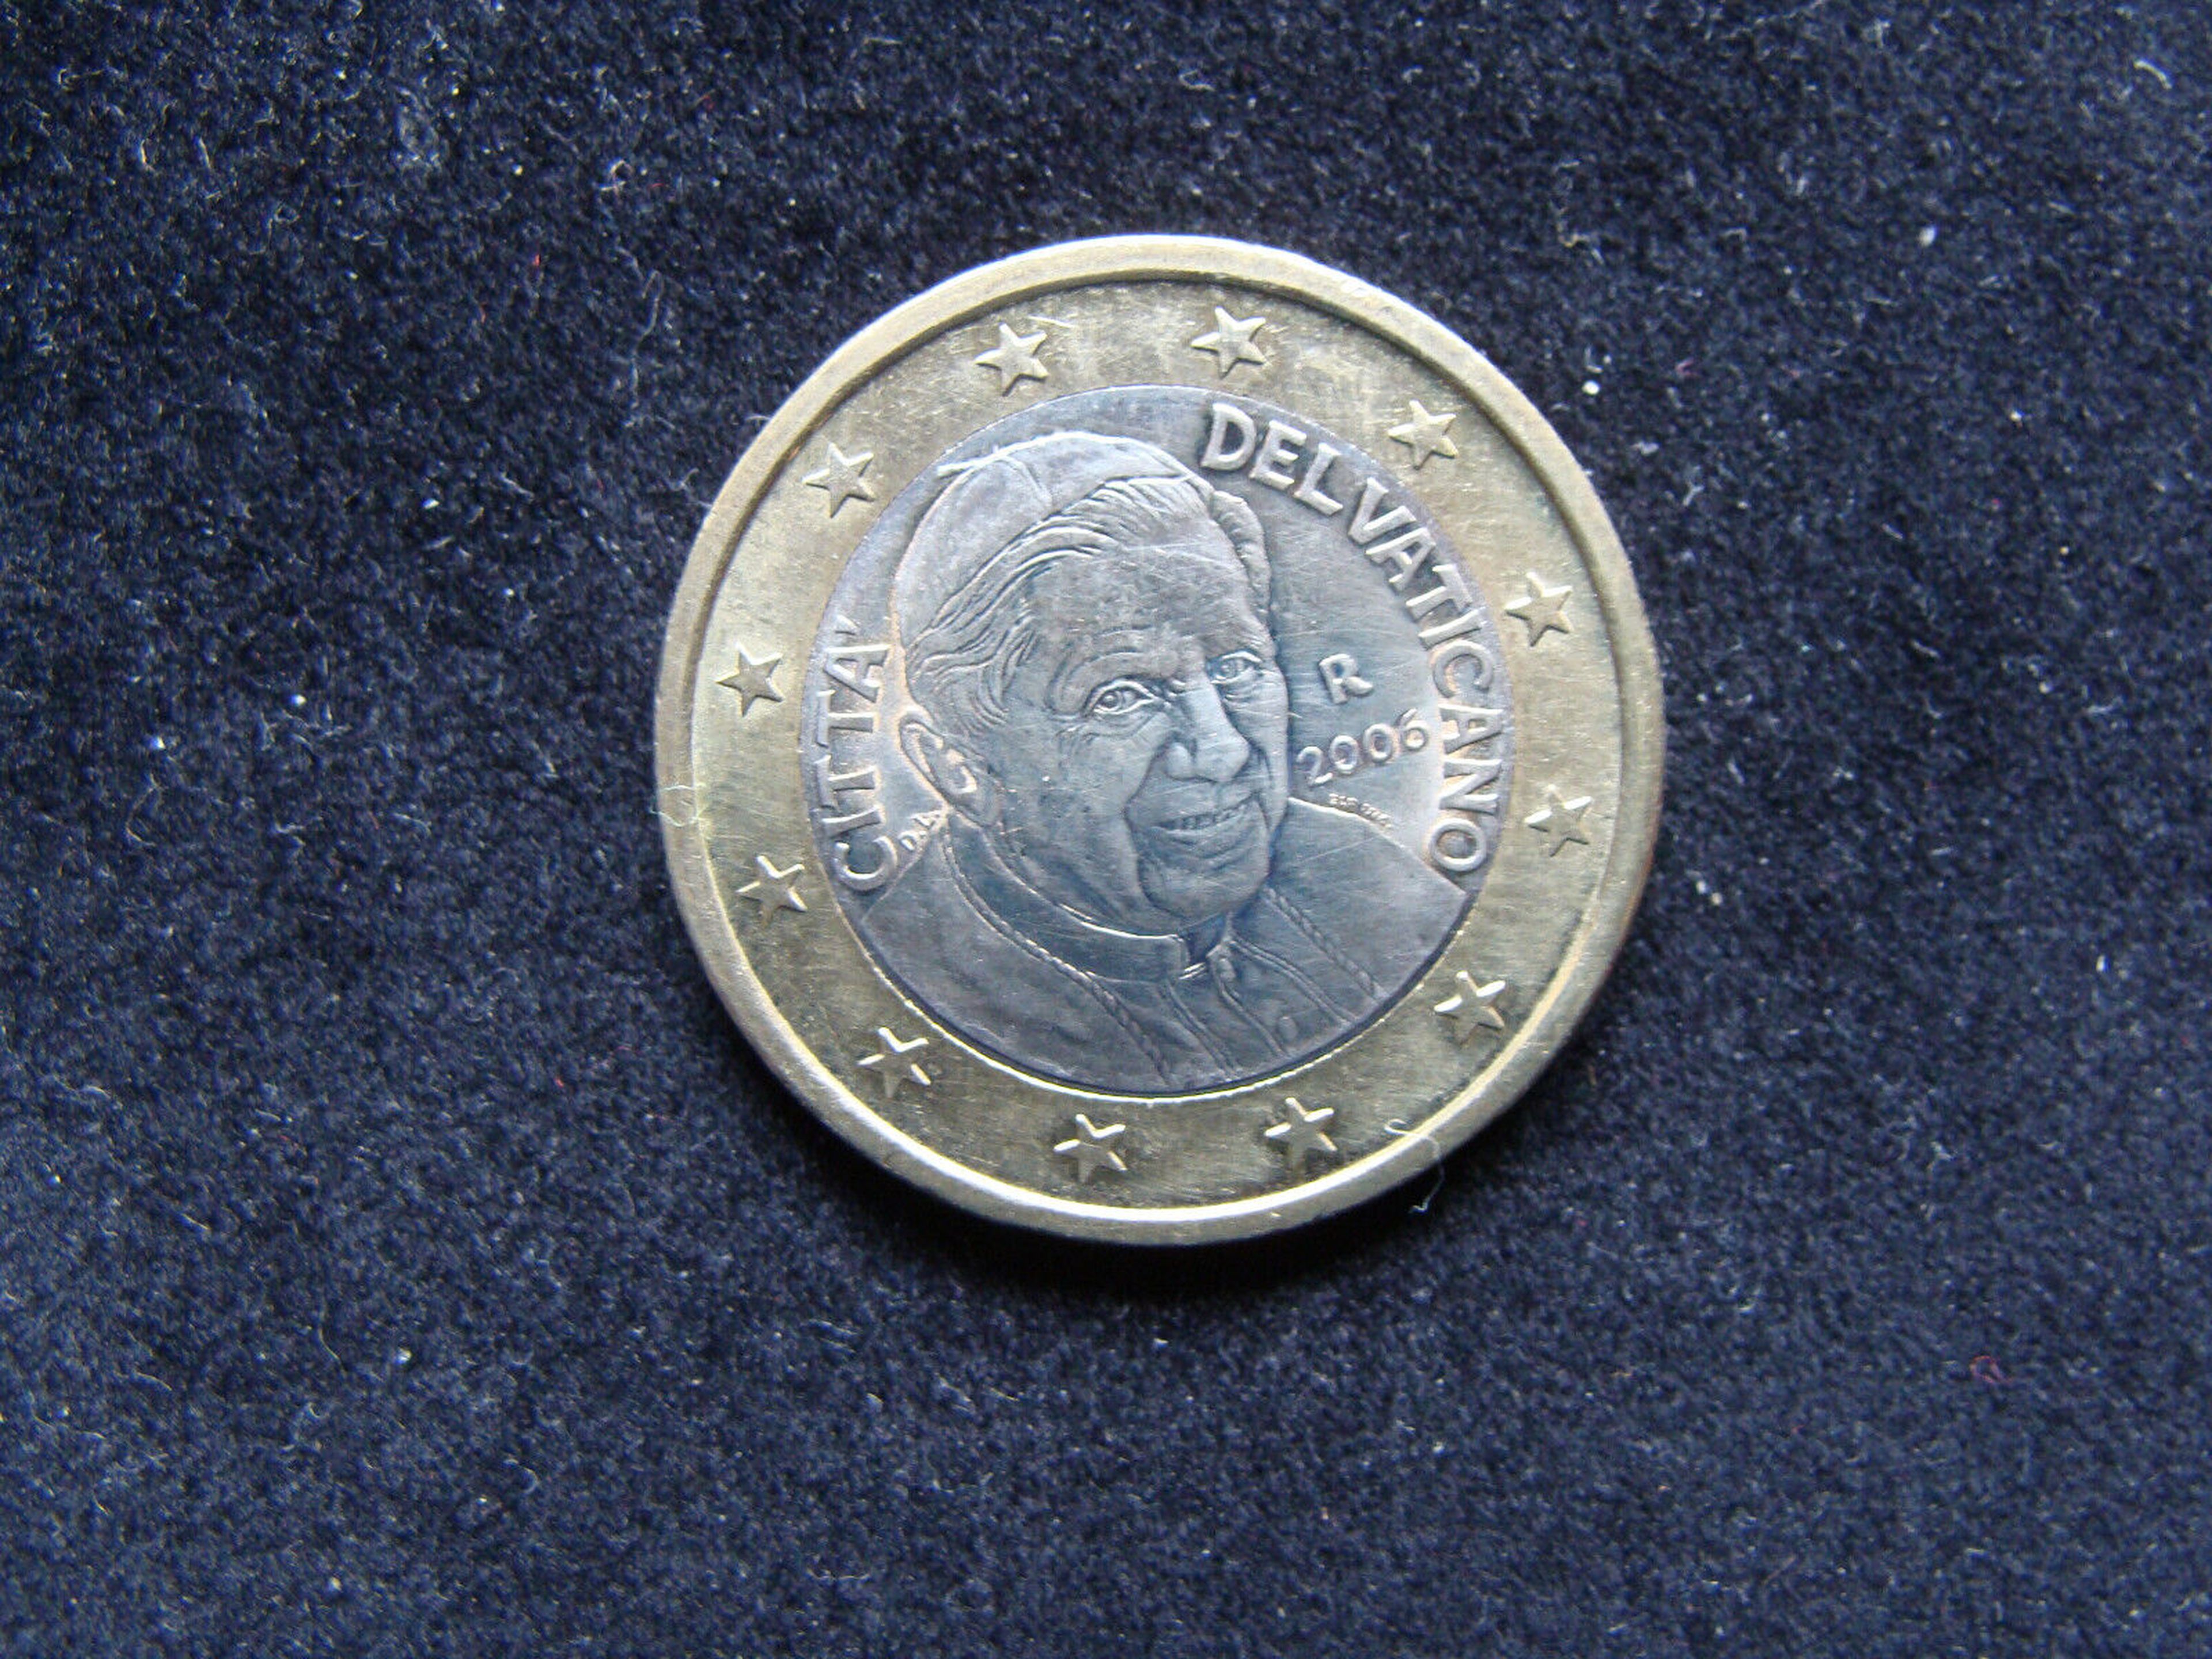 Monedas de coleccionistas: La moneda de 1 euro que vale 105 euros en el  mercado